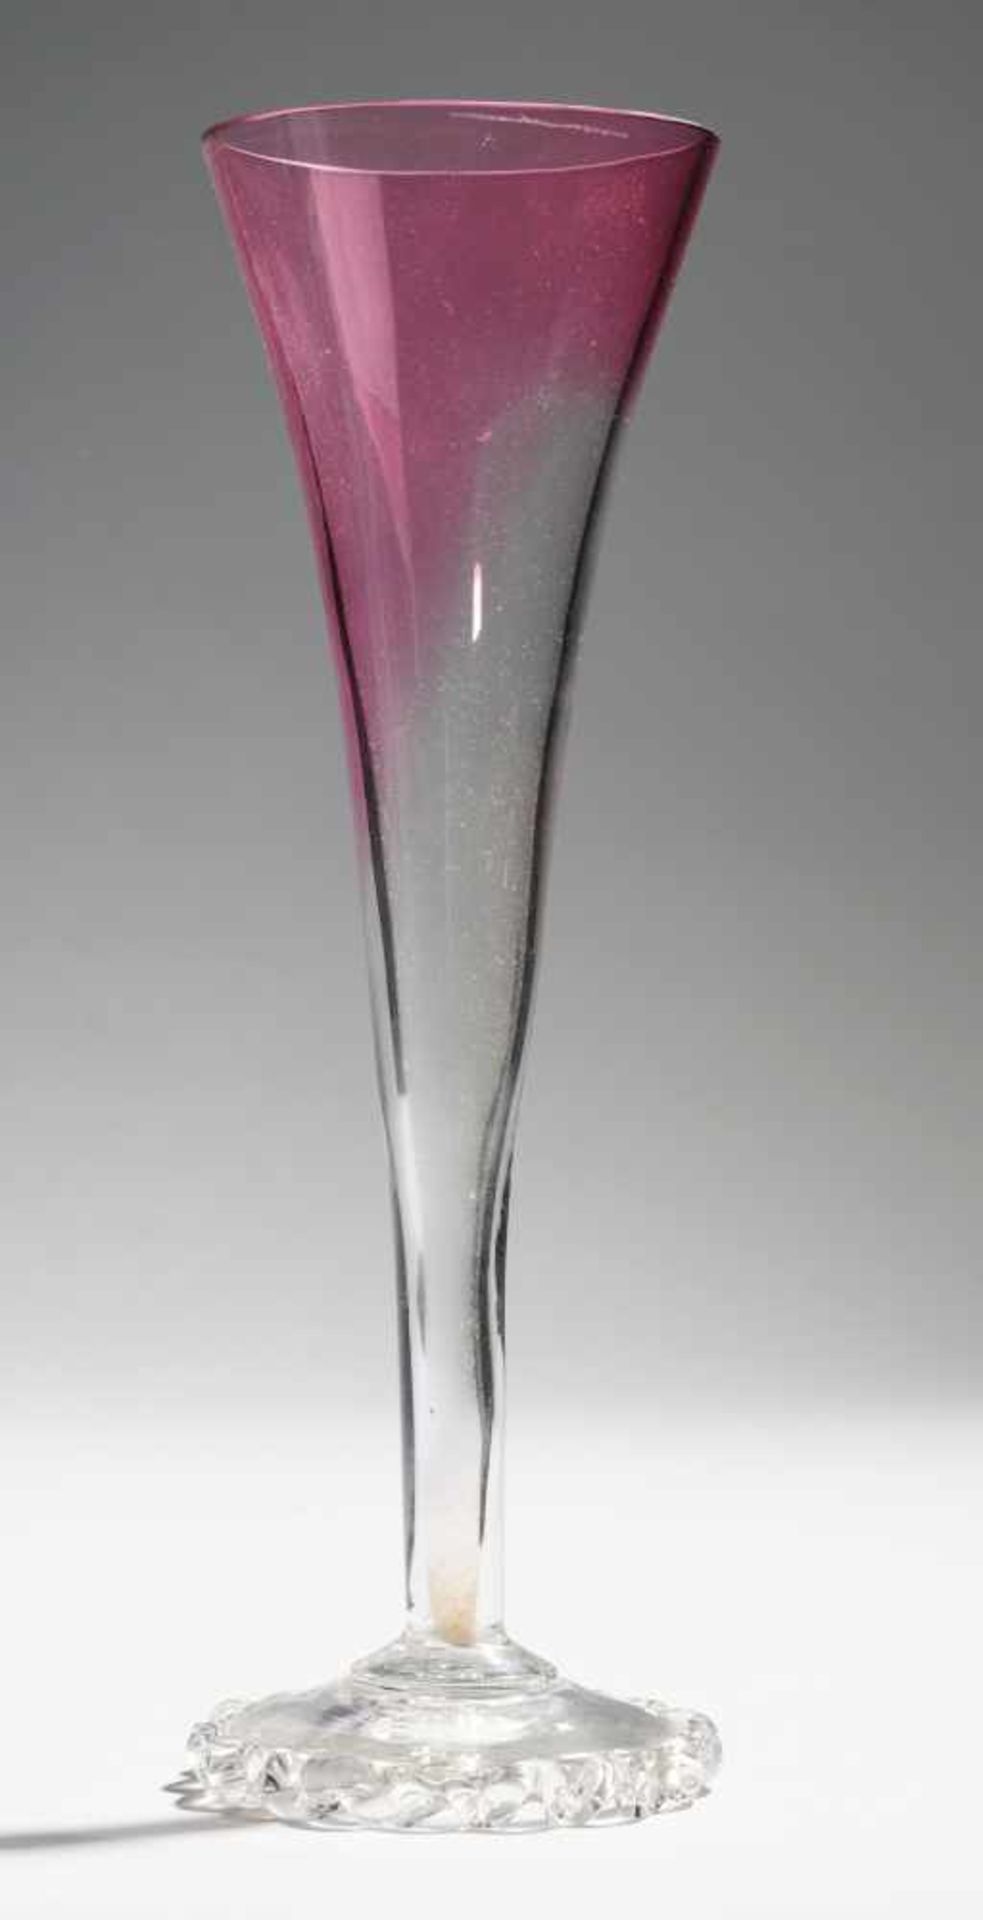 Historismus-SektglasFarbloses Glas, von der Mündung her verlaufend rotviolett überfangen.